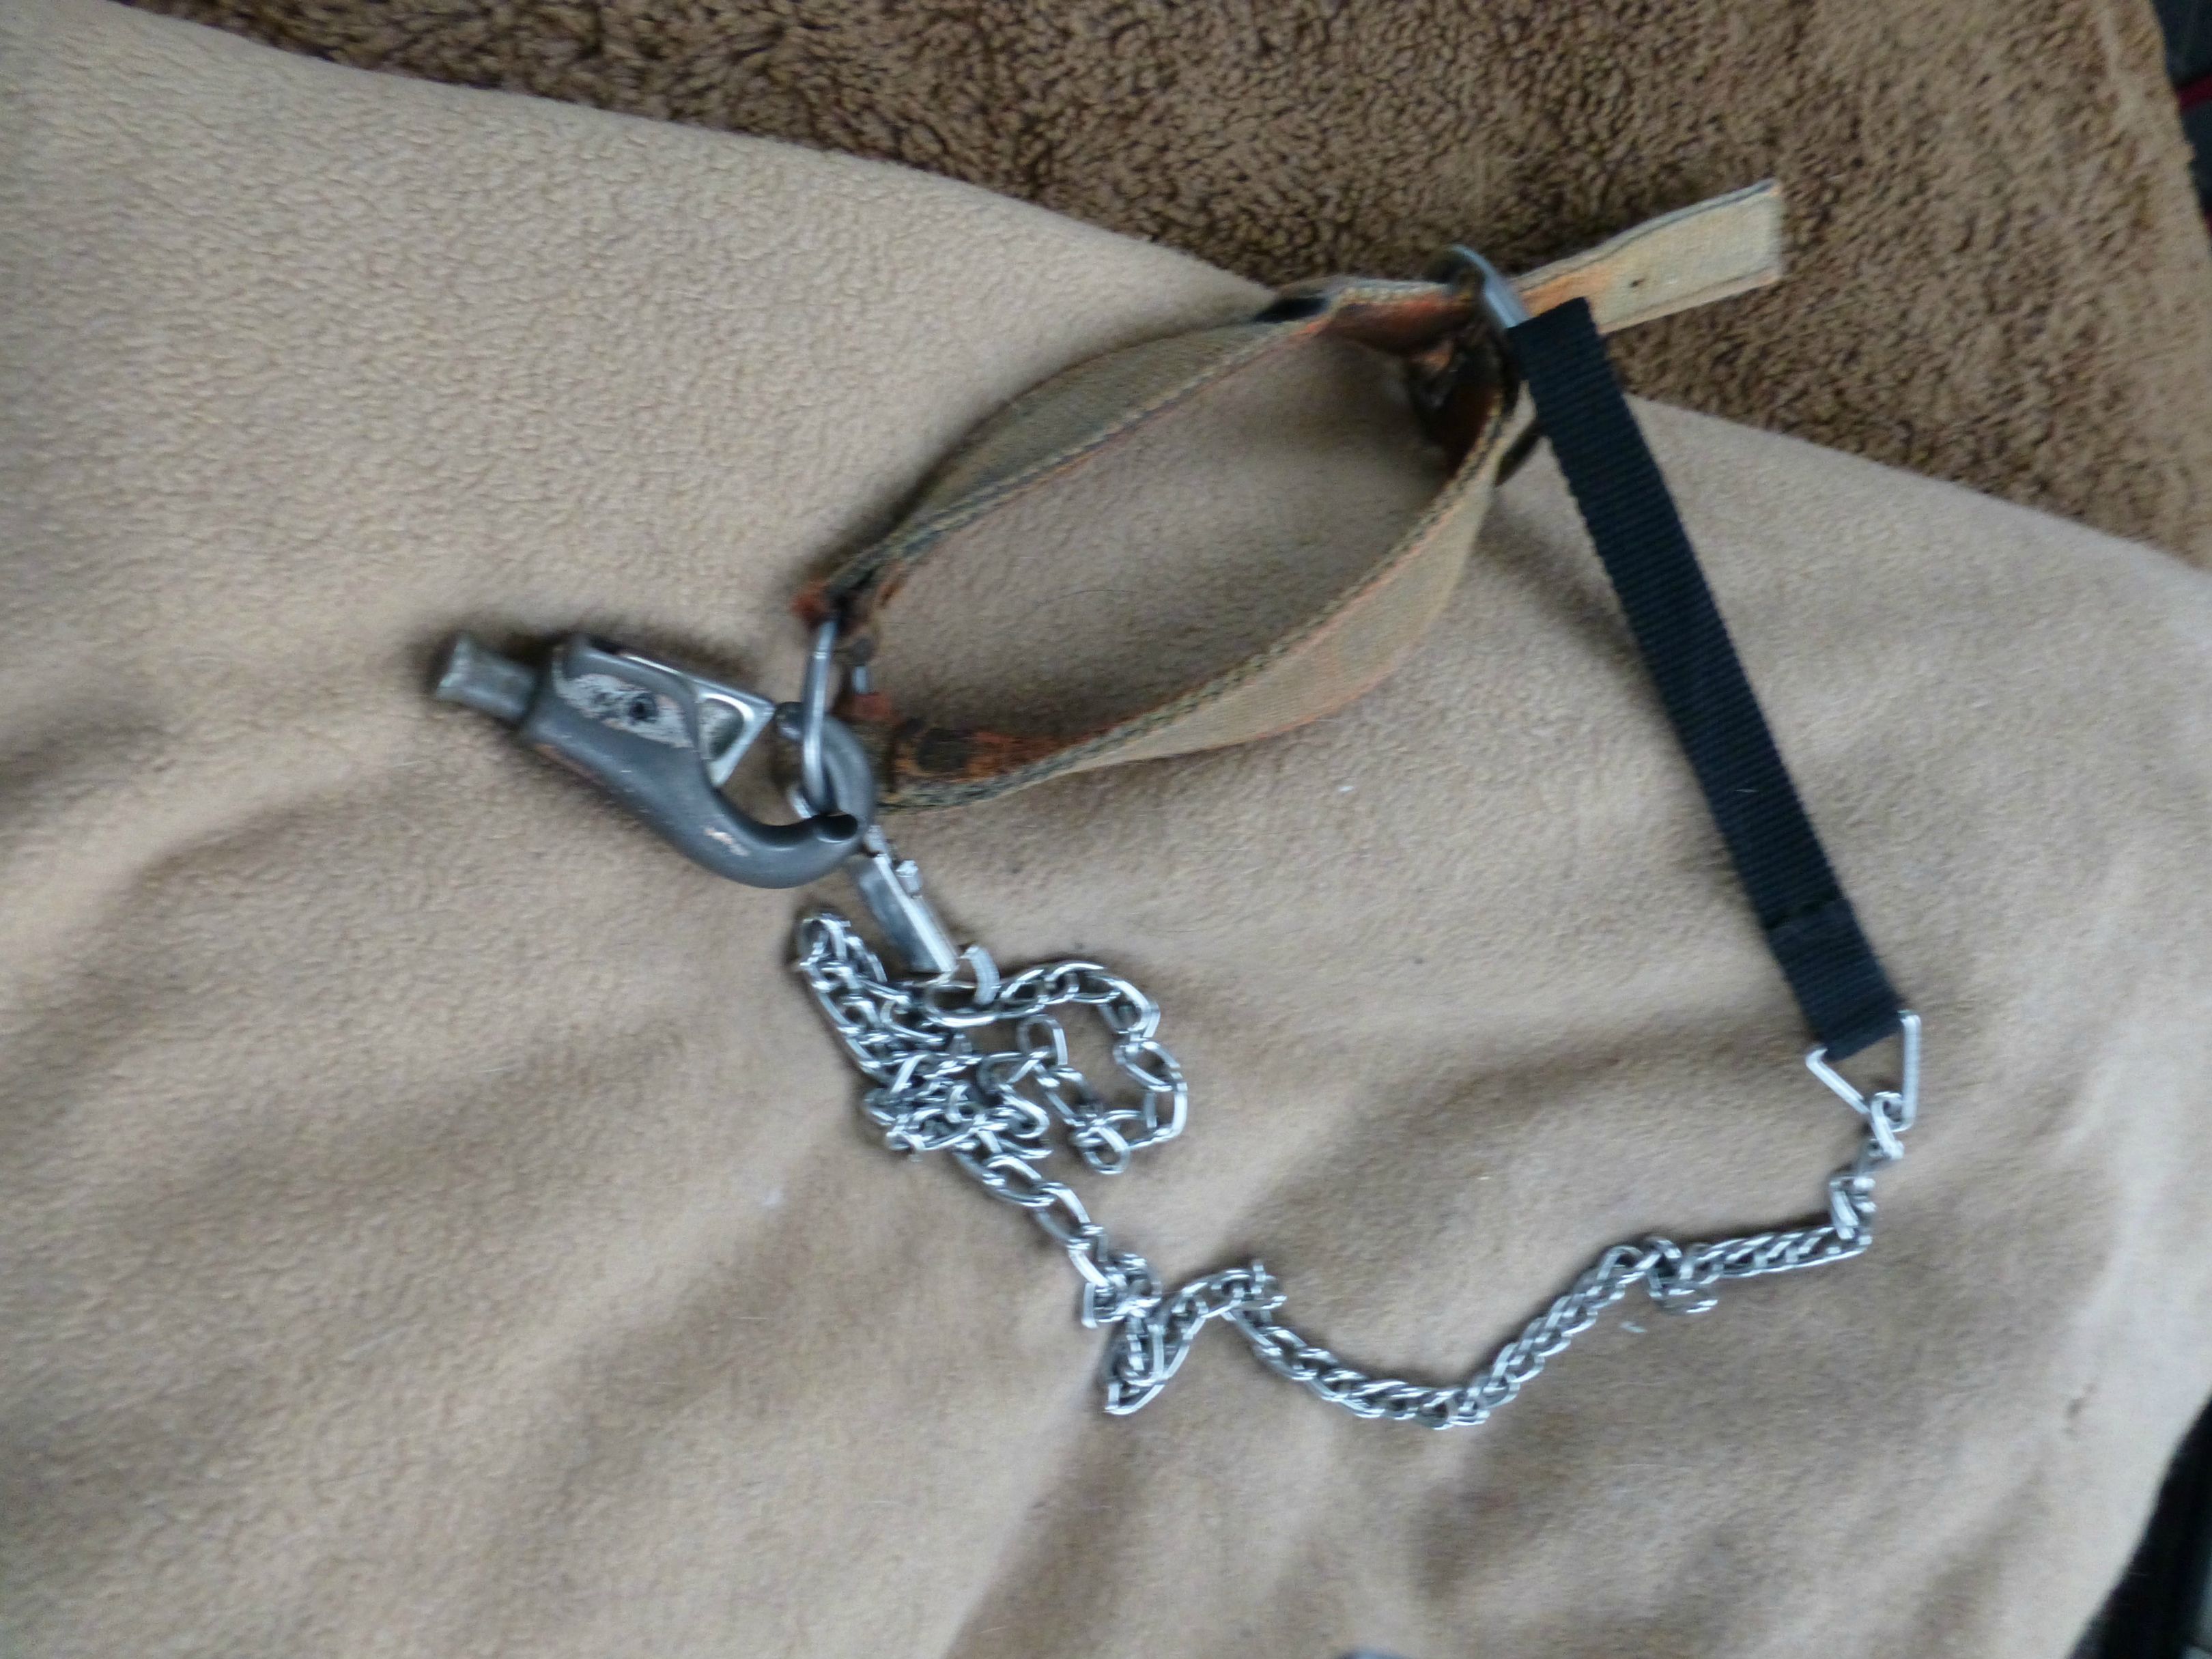 Rory's chain